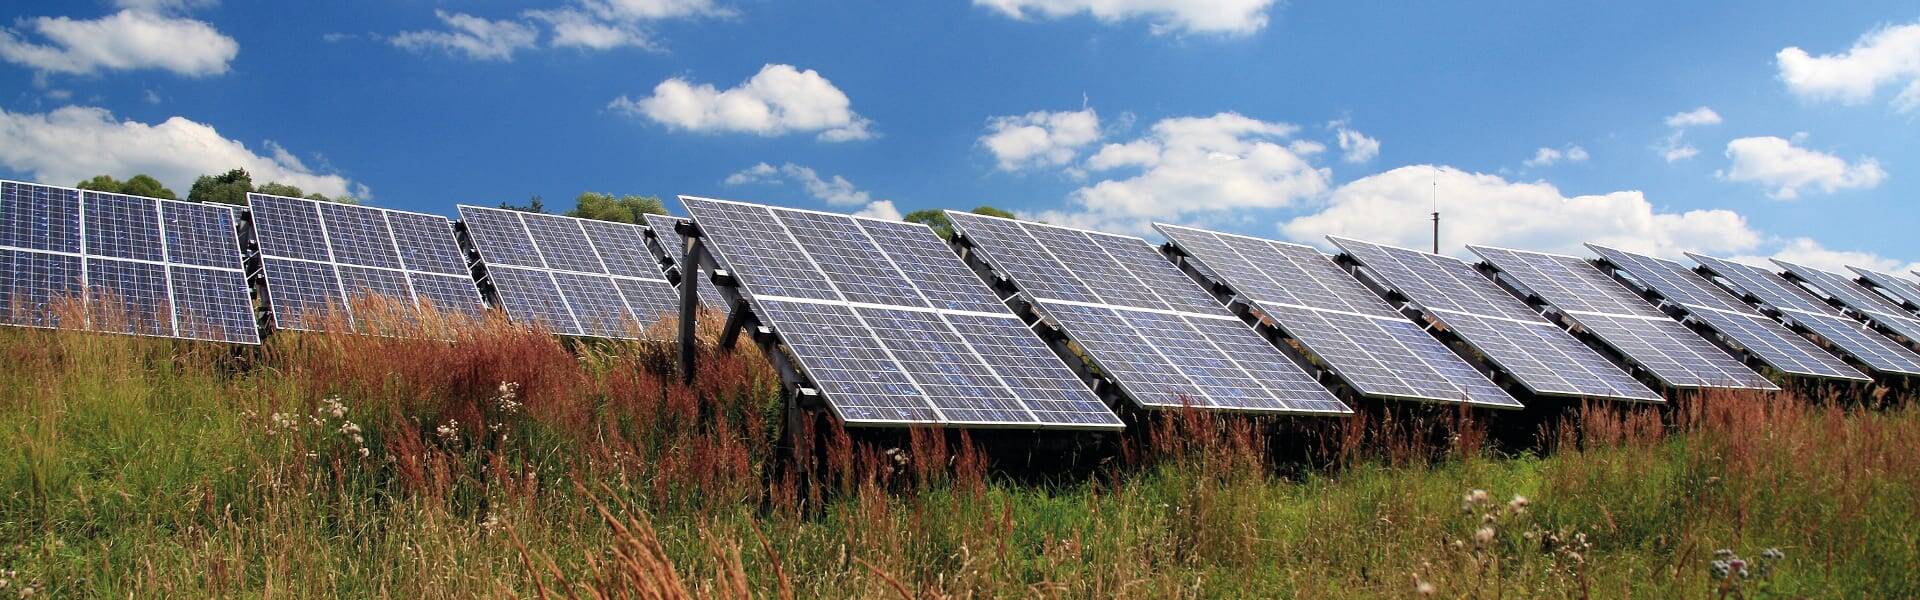 EDF proposes 350MW solar farm in Essex